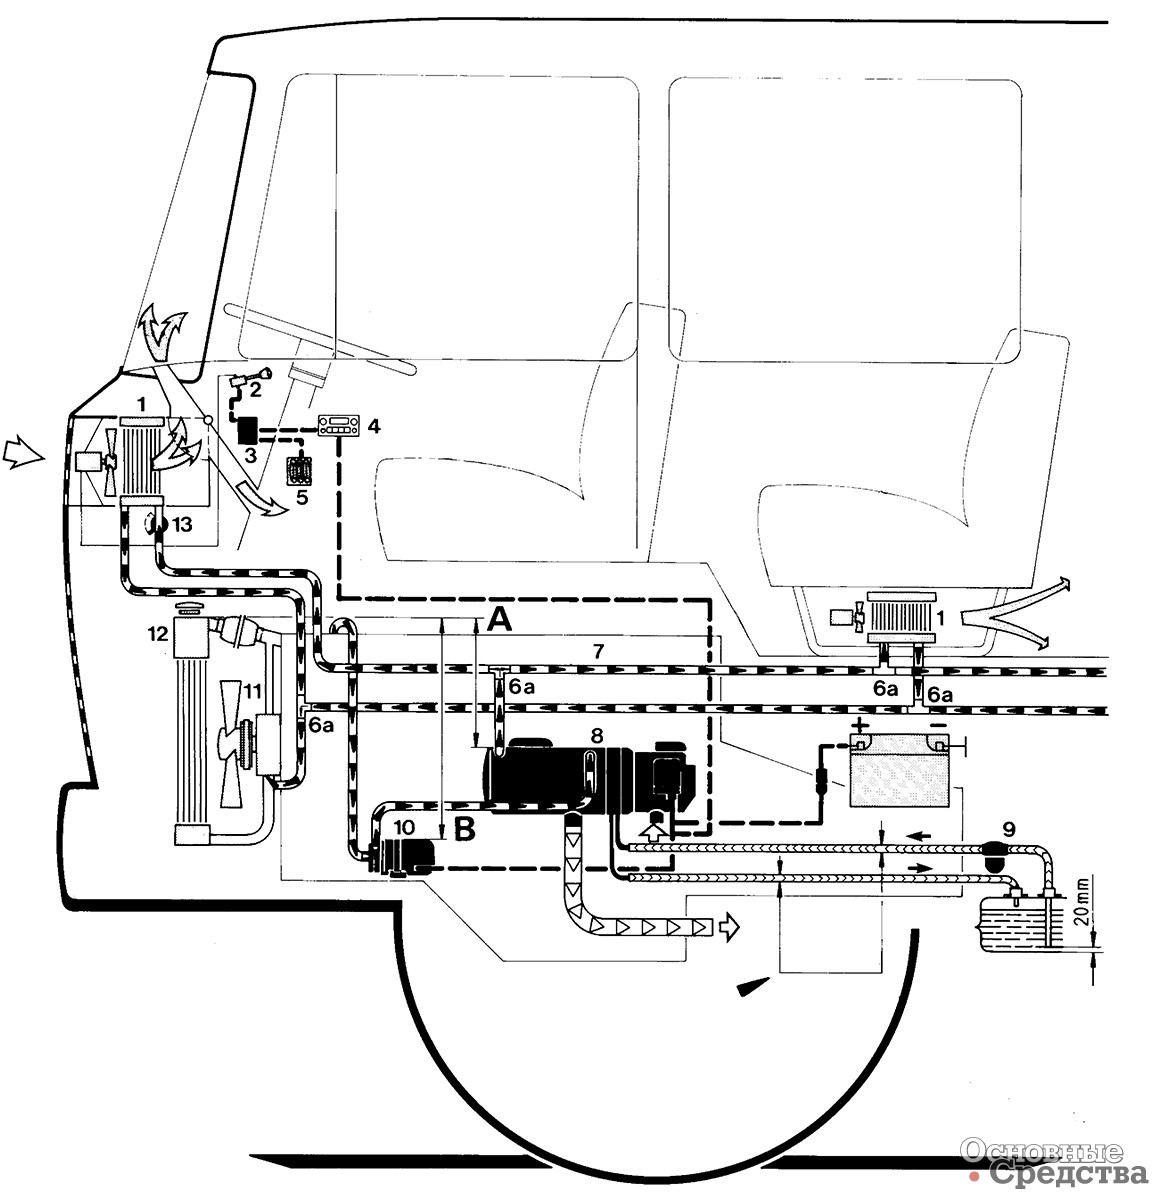 [b]Рис. 4. Пример установки на автомобиле:[/b] 1 - теплообменник отопительной системы автомобиля; 2 - выключатель автомобильного вентилятора; 3 - реле автомобильного вентилятора; 4 - часовое программируемое устройство; 5 - колодка с предохранителями автомобиля; 6 - обратный клапан с отверстием для отвода просачивающейся воды; 6а - Т-образный переходник (тройник); 7 - двигатель автомобиля; 8 - отопитель; 9 - топливный фильтр; 10 - циркуляционный насос; 11 - гидронасос; 12 - радиатор; 13 - регулировочный клапан автомобильной системы отопления